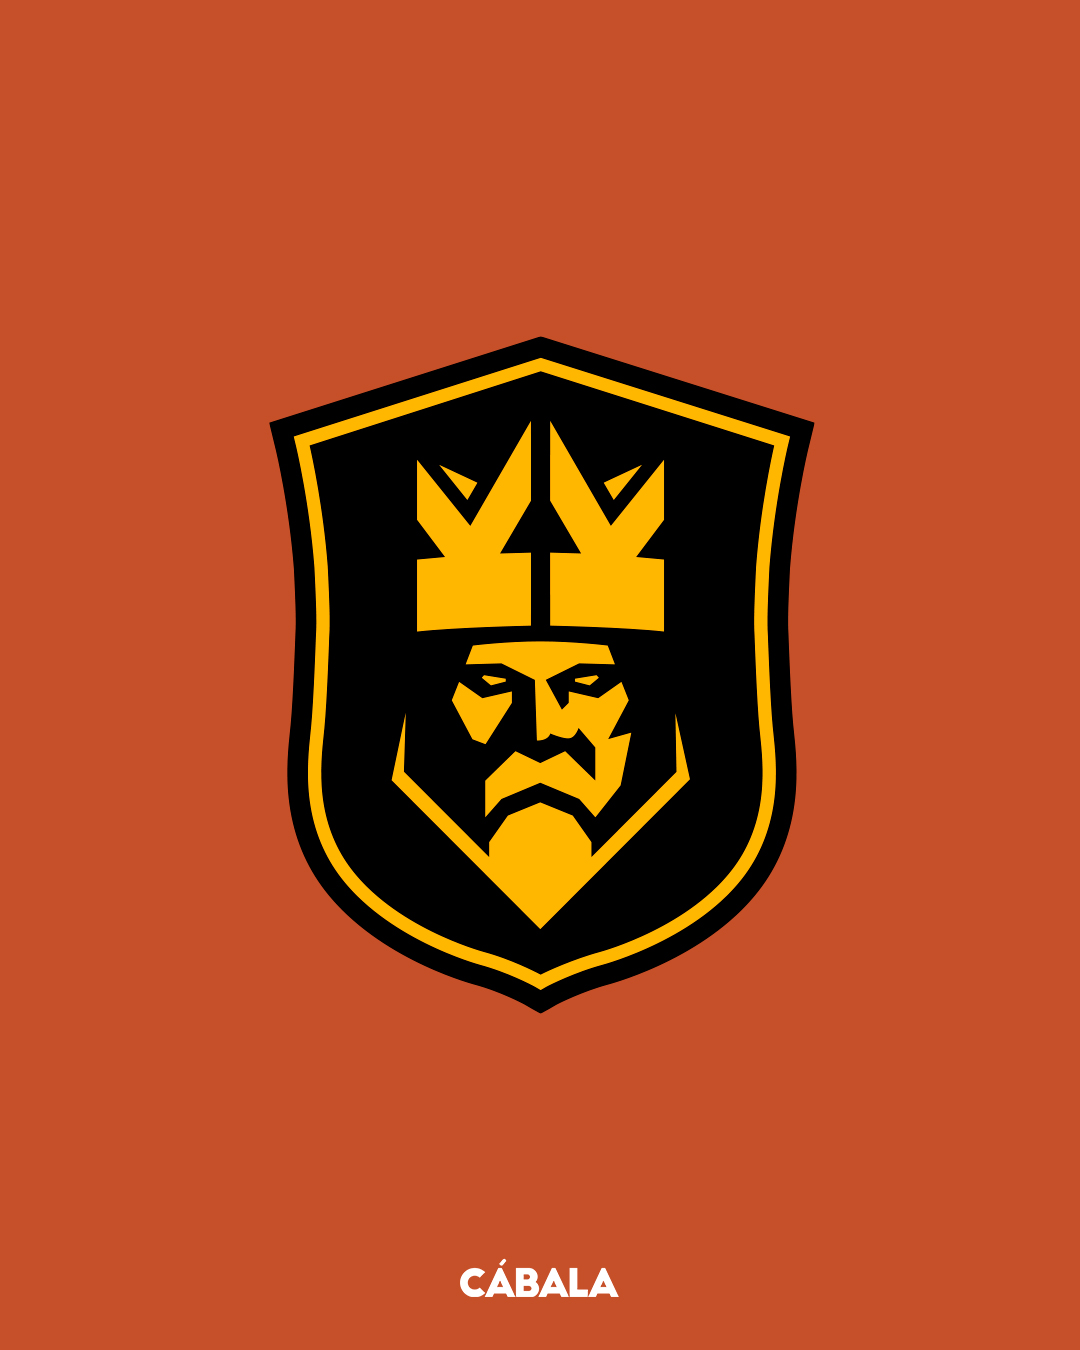 Kings League: Streamers participantes, sus equipos y el significado de cada  escudo